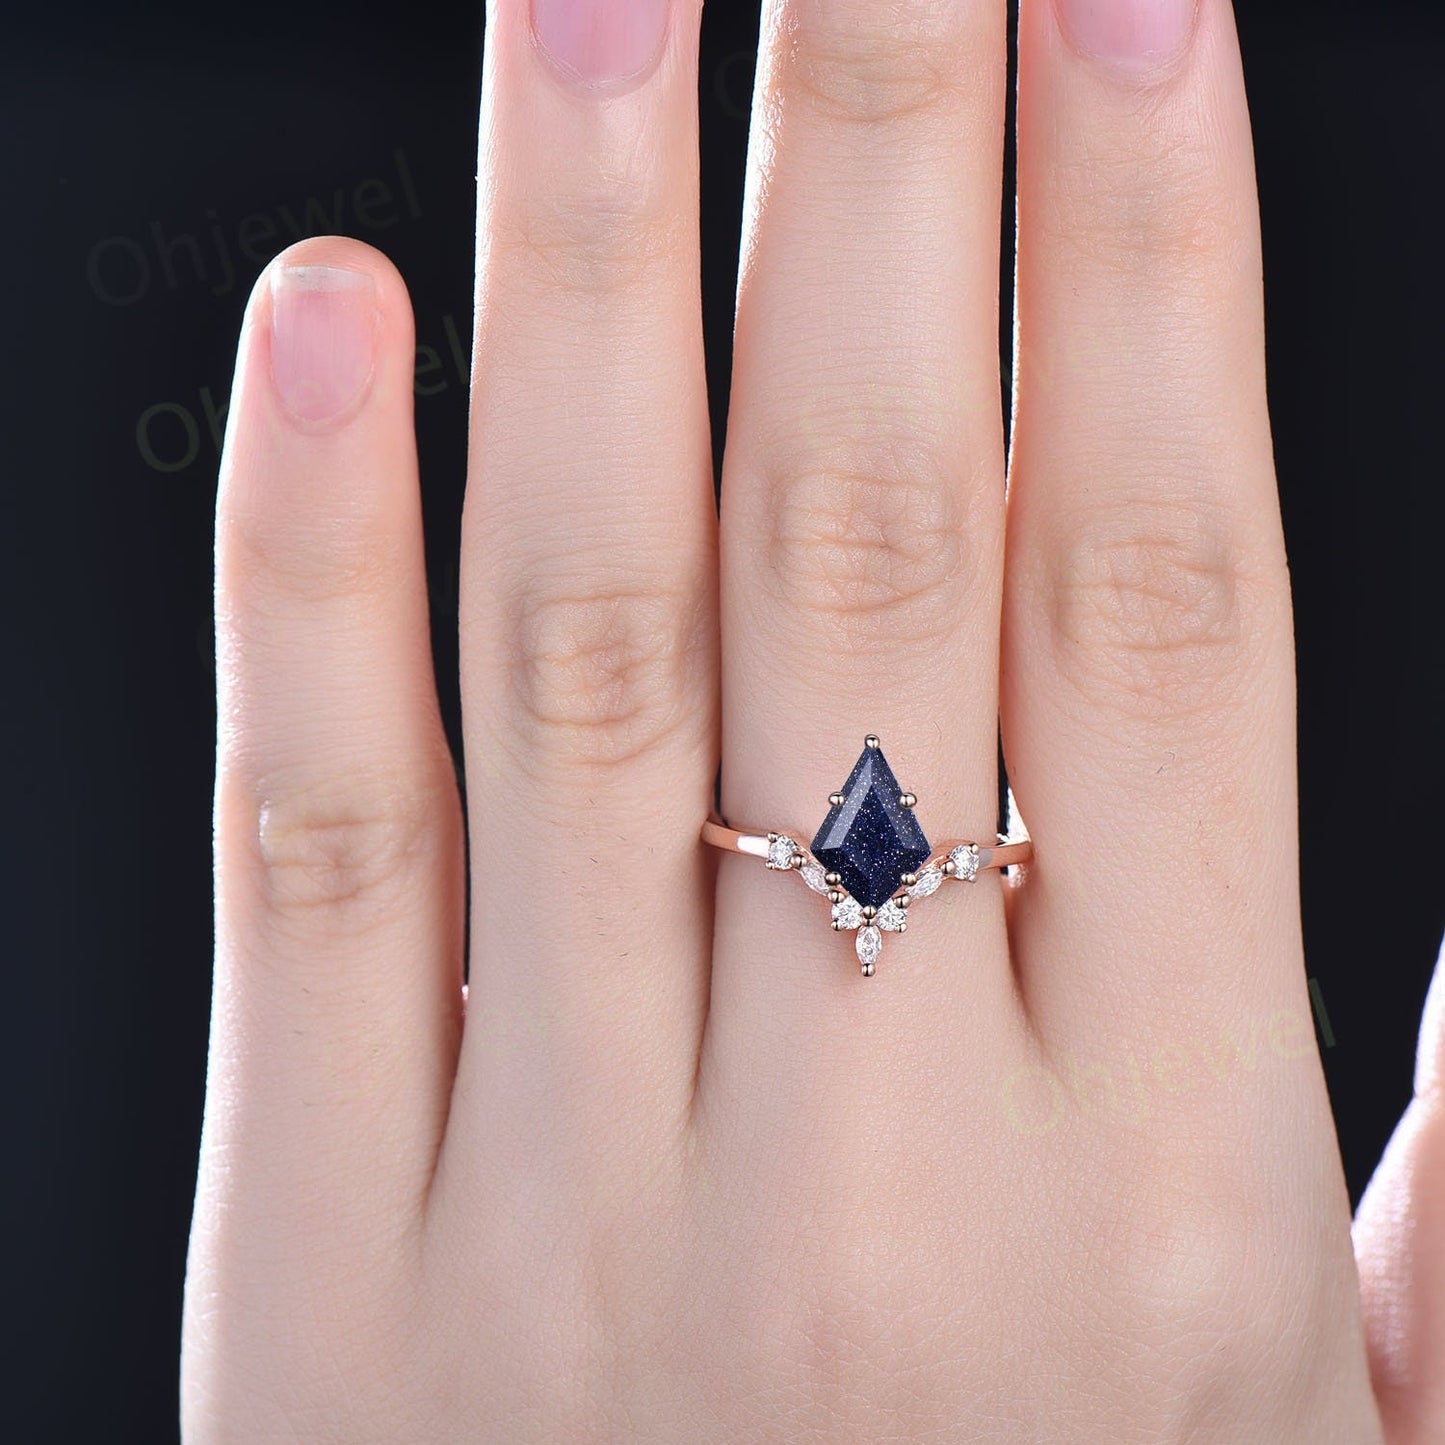 6 prong kite cut blue sandstone ring goldstone ring engagement ring 14k white gold silver art deco moissanite ring women promise anniversary